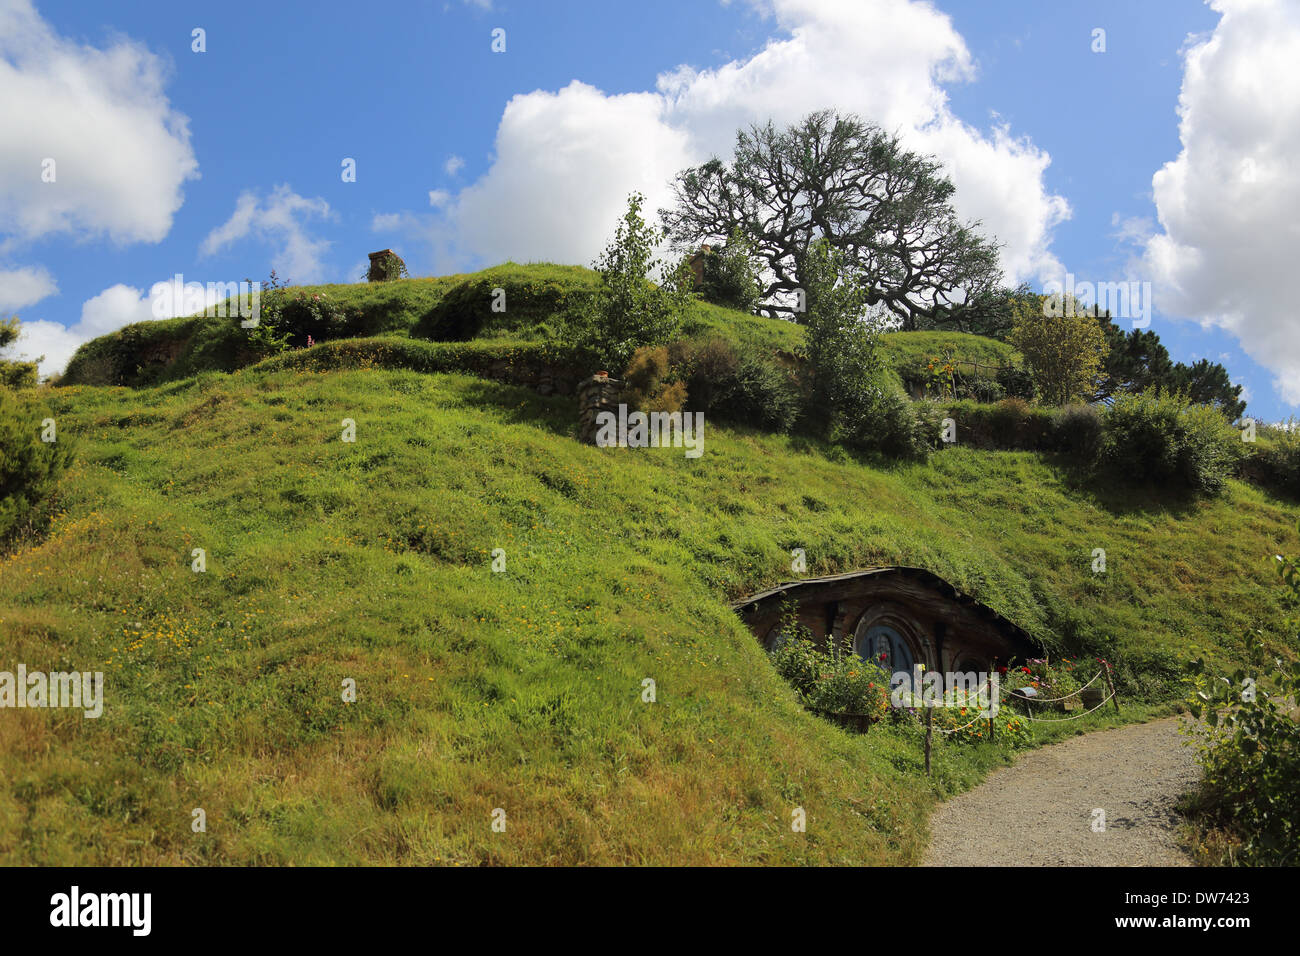 The Hobbit film set ,Hobbit Hole,Hobbiton, Broadway, Matamata, Near Cambridge, Waikato Region, North Island, New Zealand Stock Photo